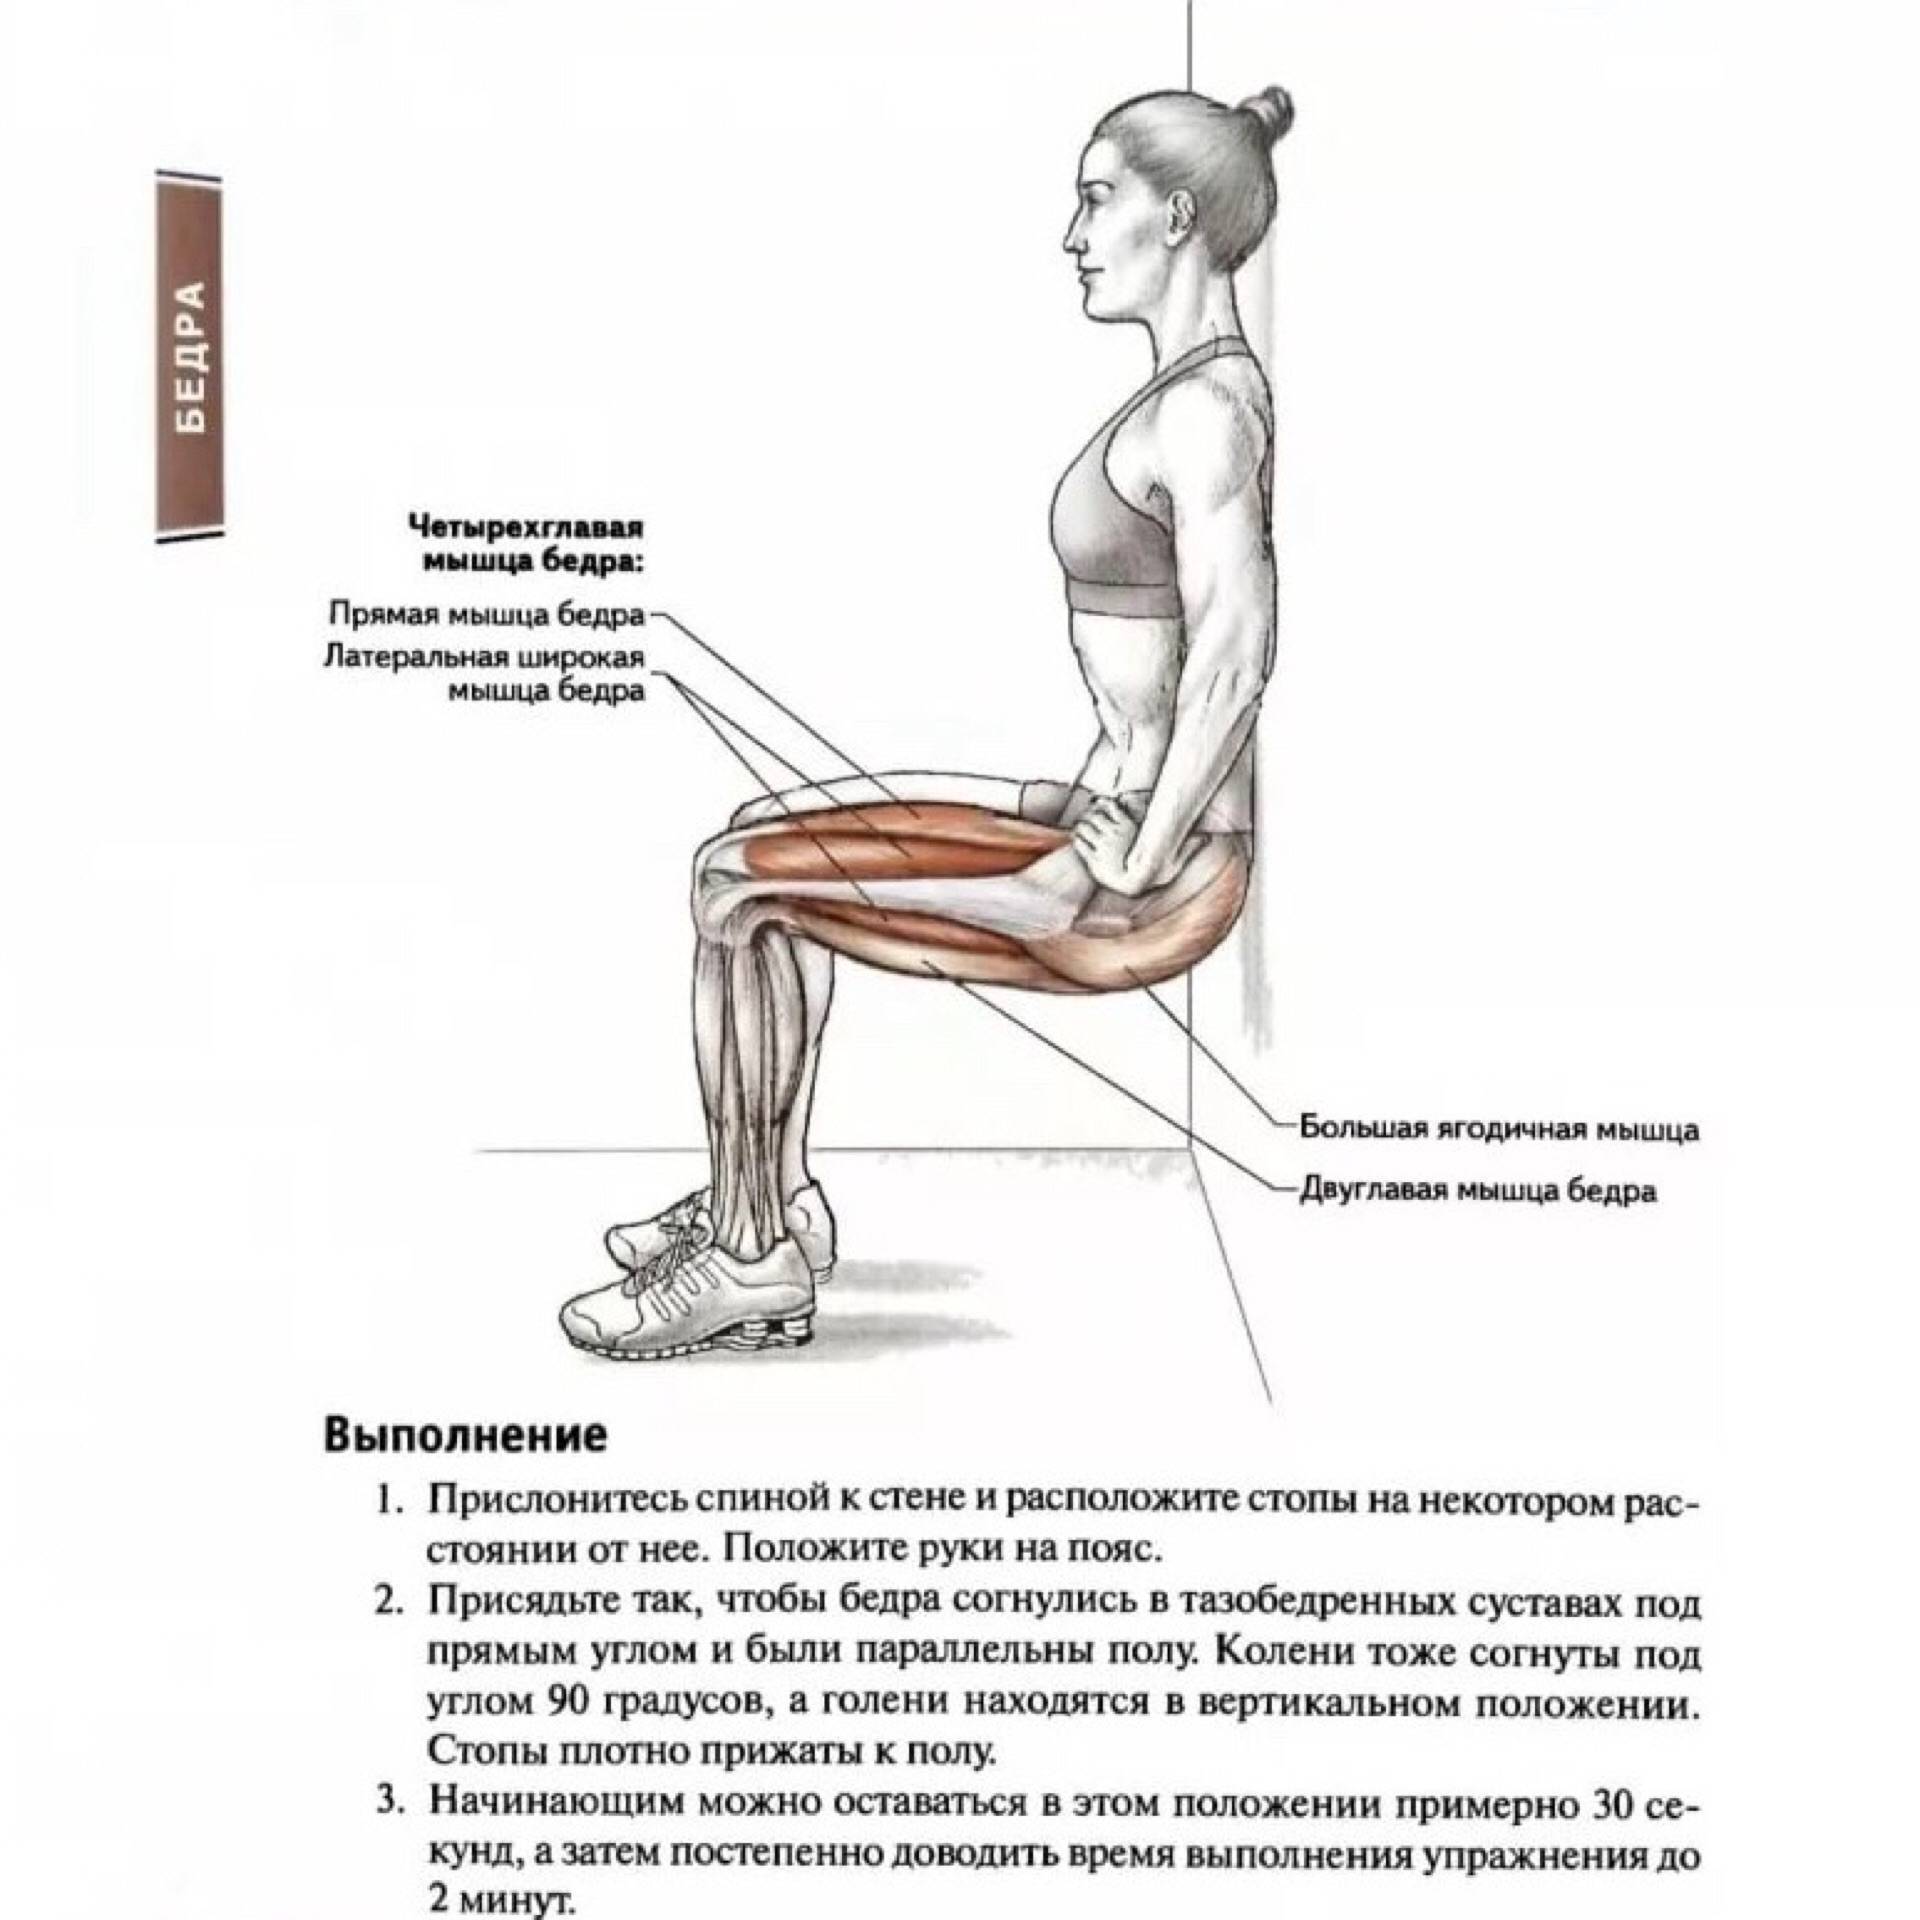 Приседания на коленях — правильная техника и рекомендации